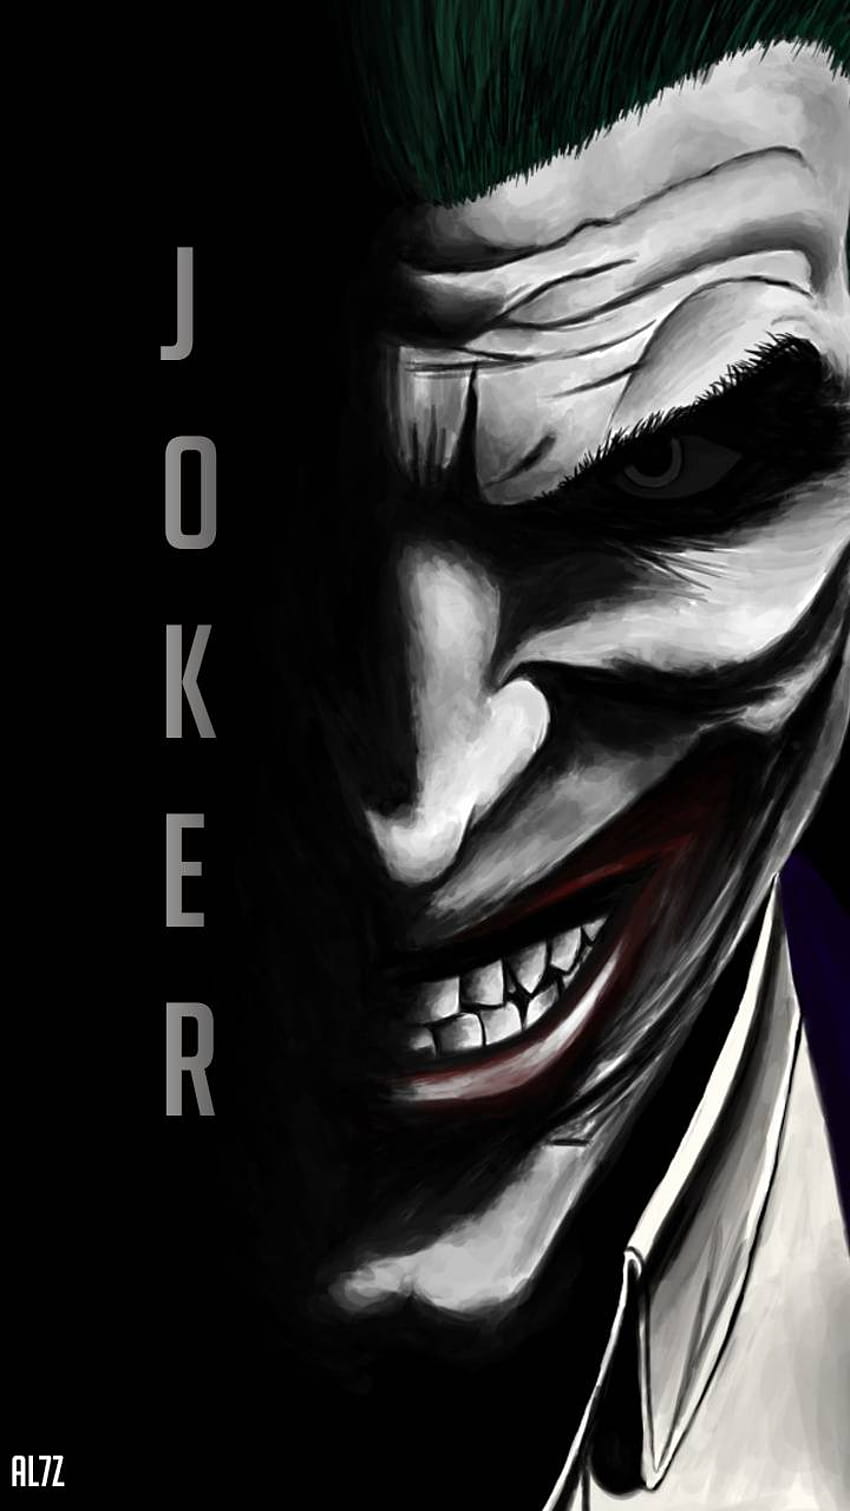 Joker Quotes Zedge s HD phone wallpaper | Pxfuel